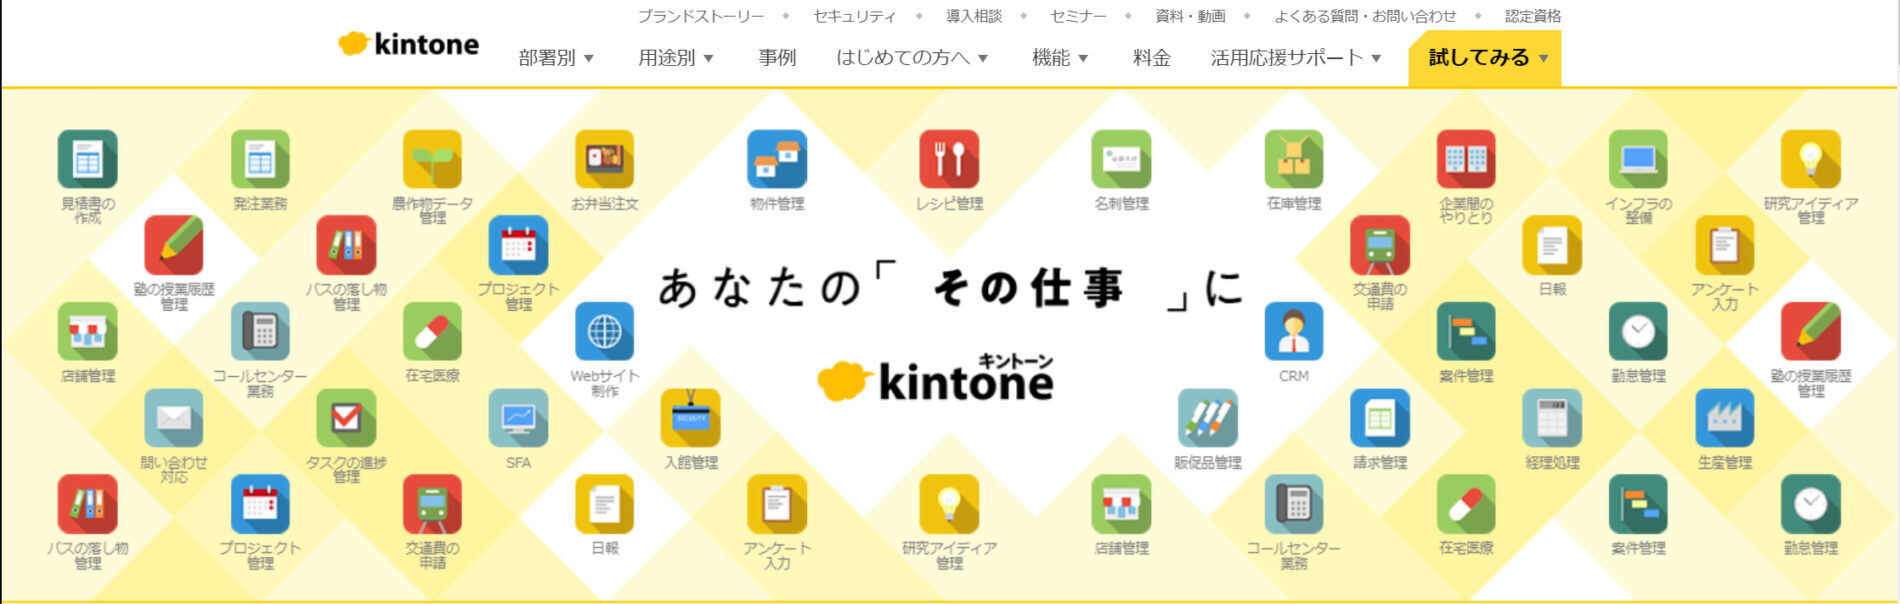 kintoneのトップページ